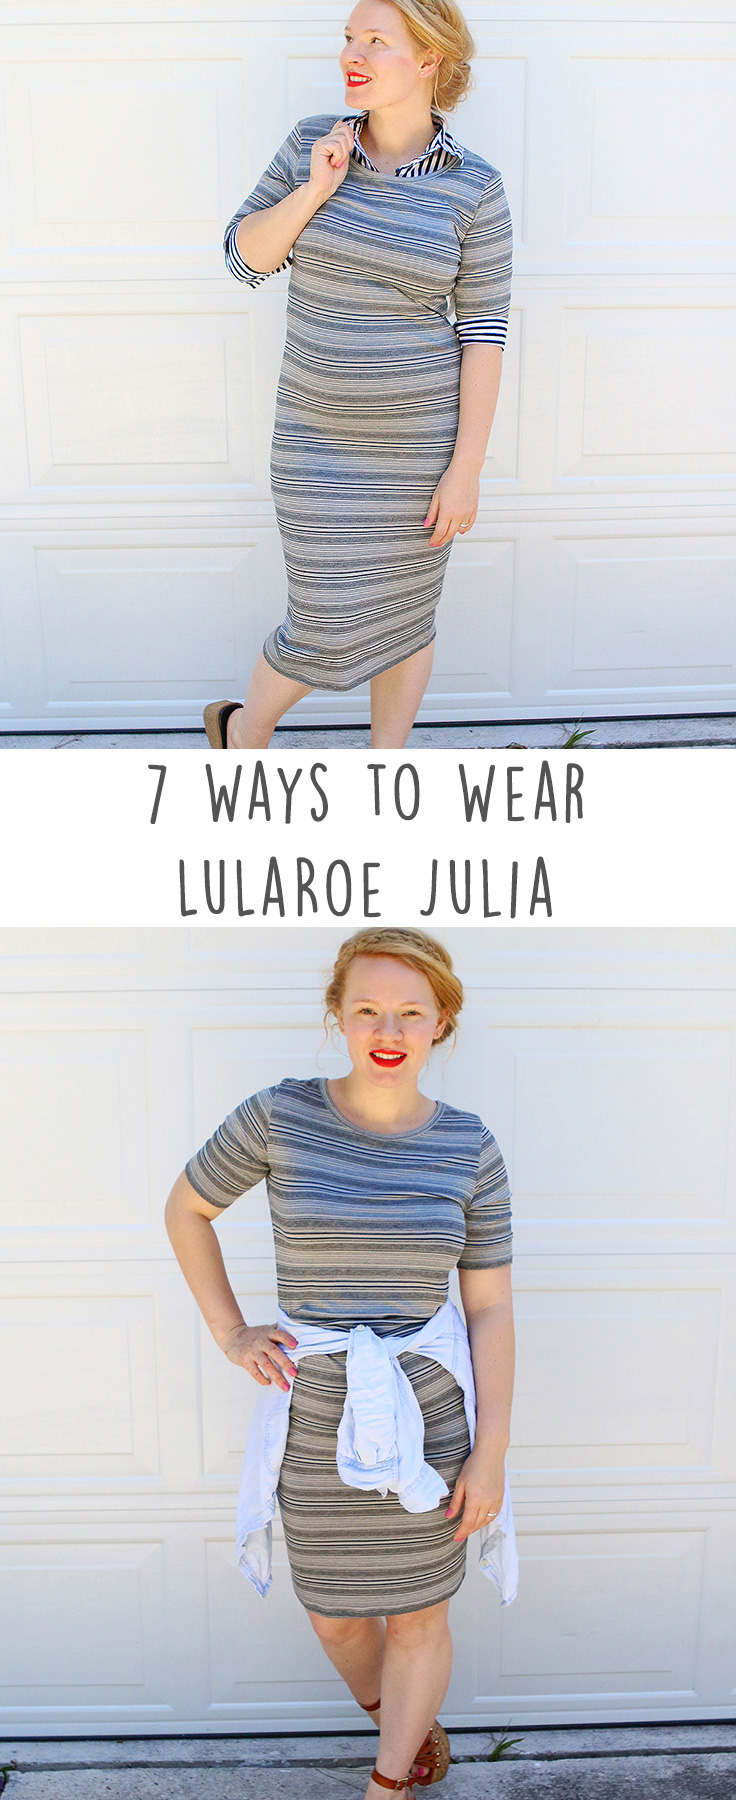 Lularoe Julia Dress XL Pencil Dress NWT - Fast Shipping